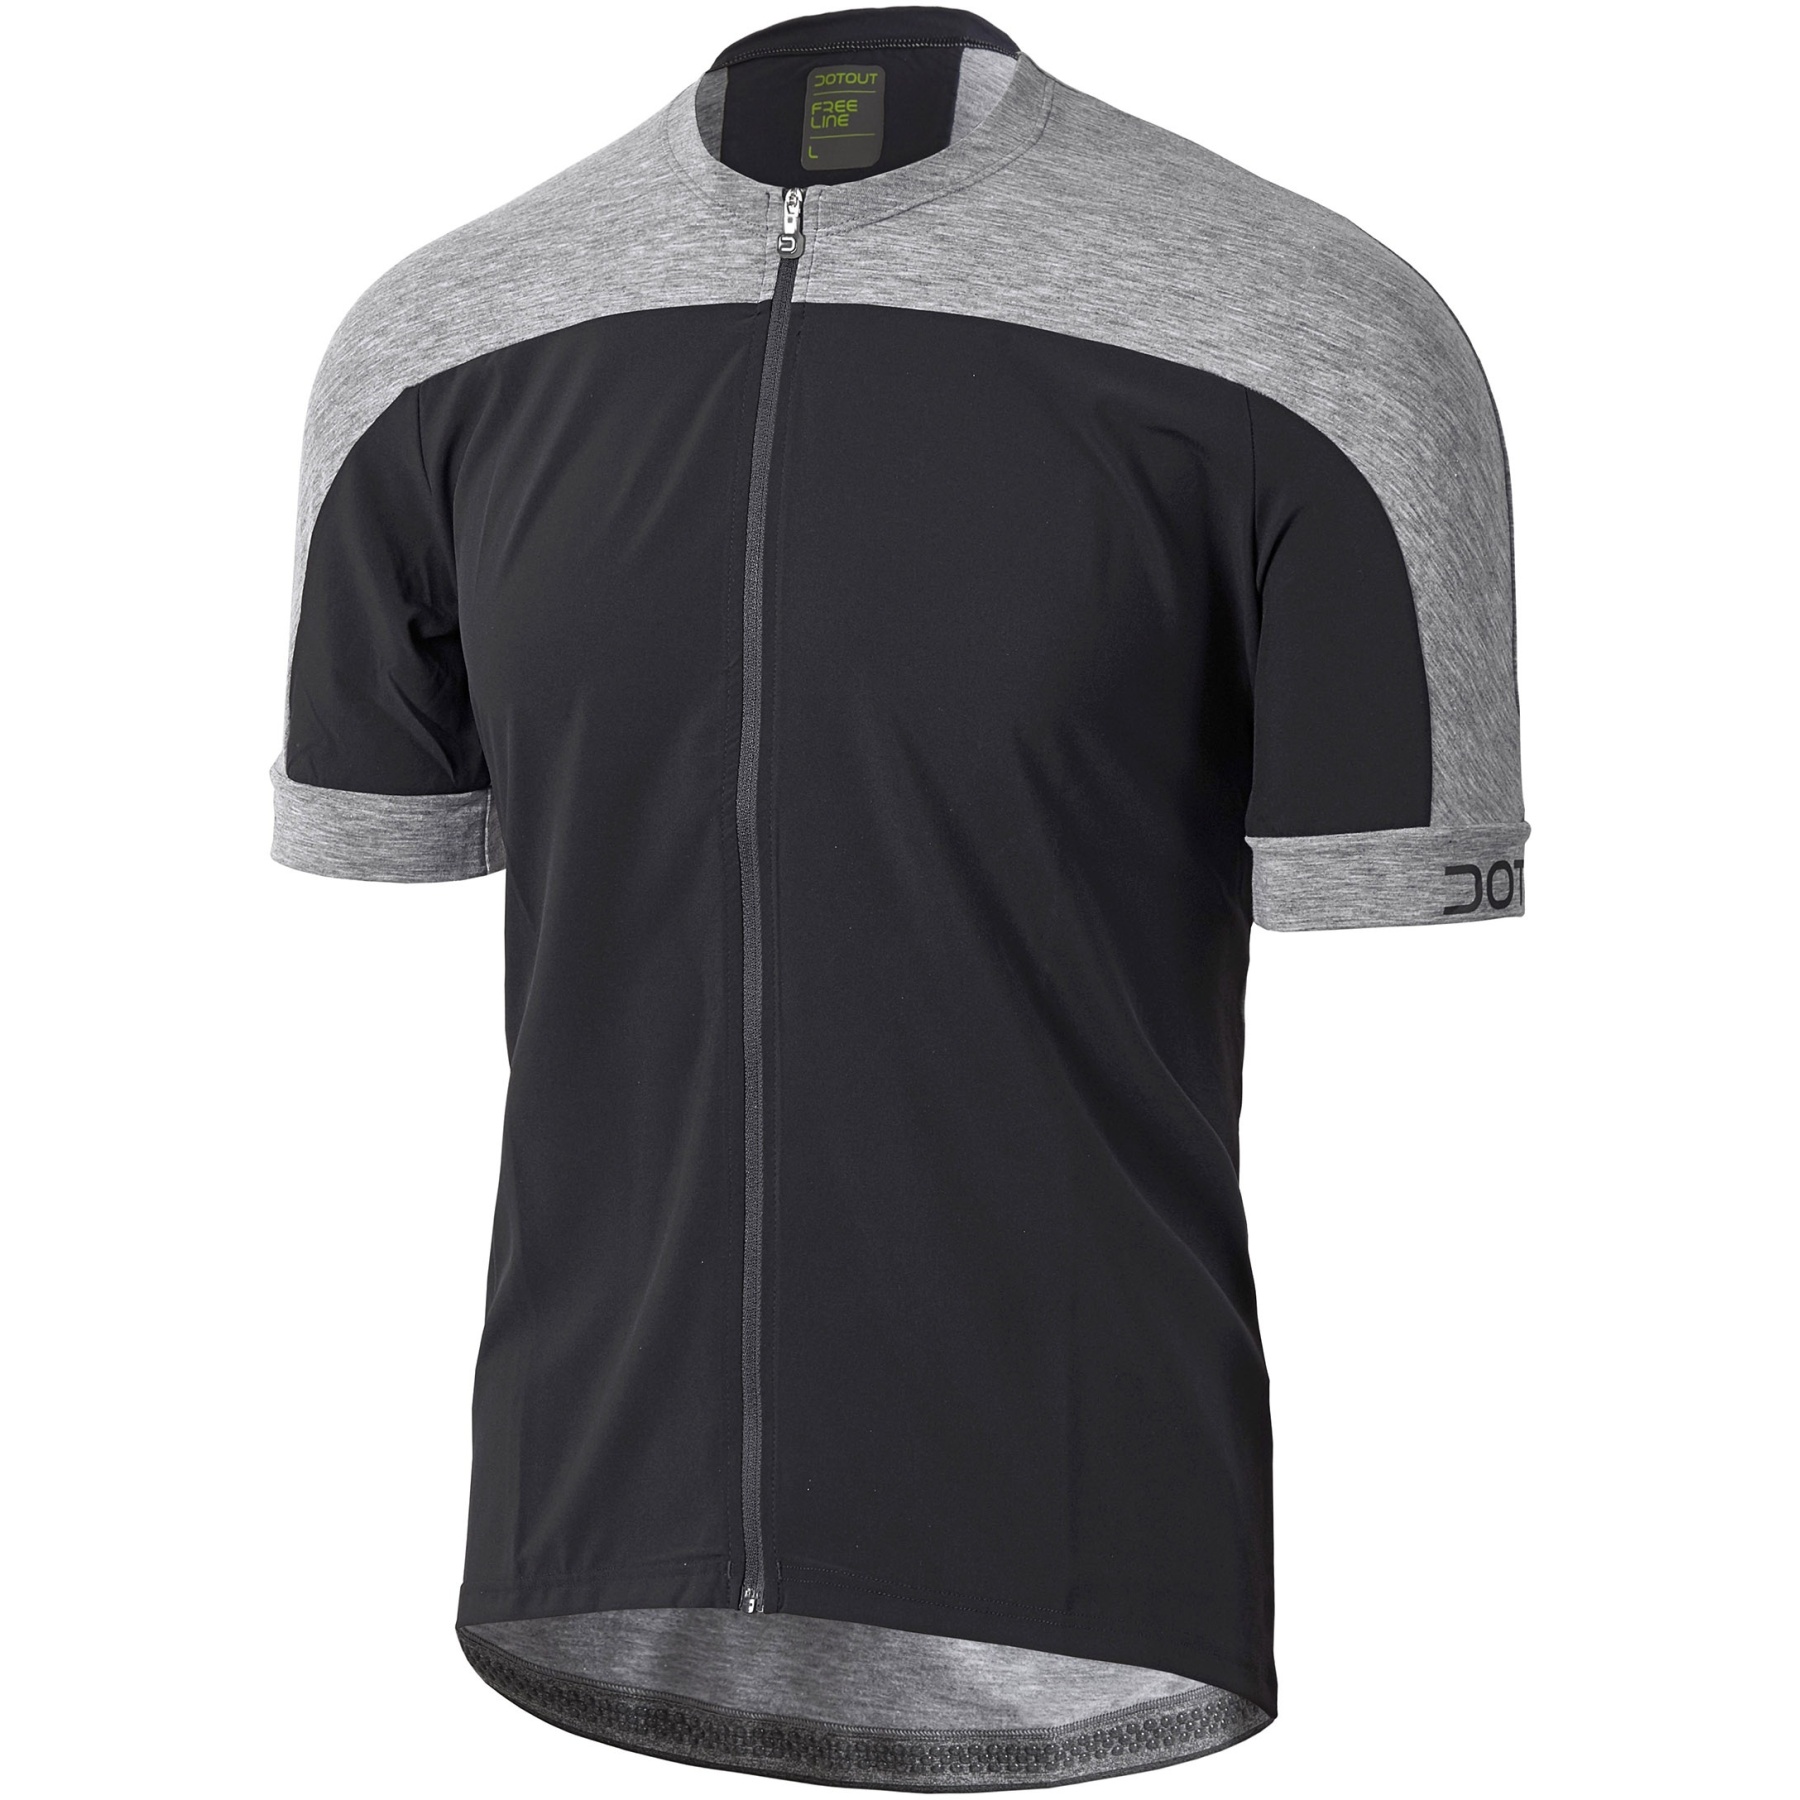 Productfoto van Dotout Freemont Fietsshirt Heren - black/melange light grey